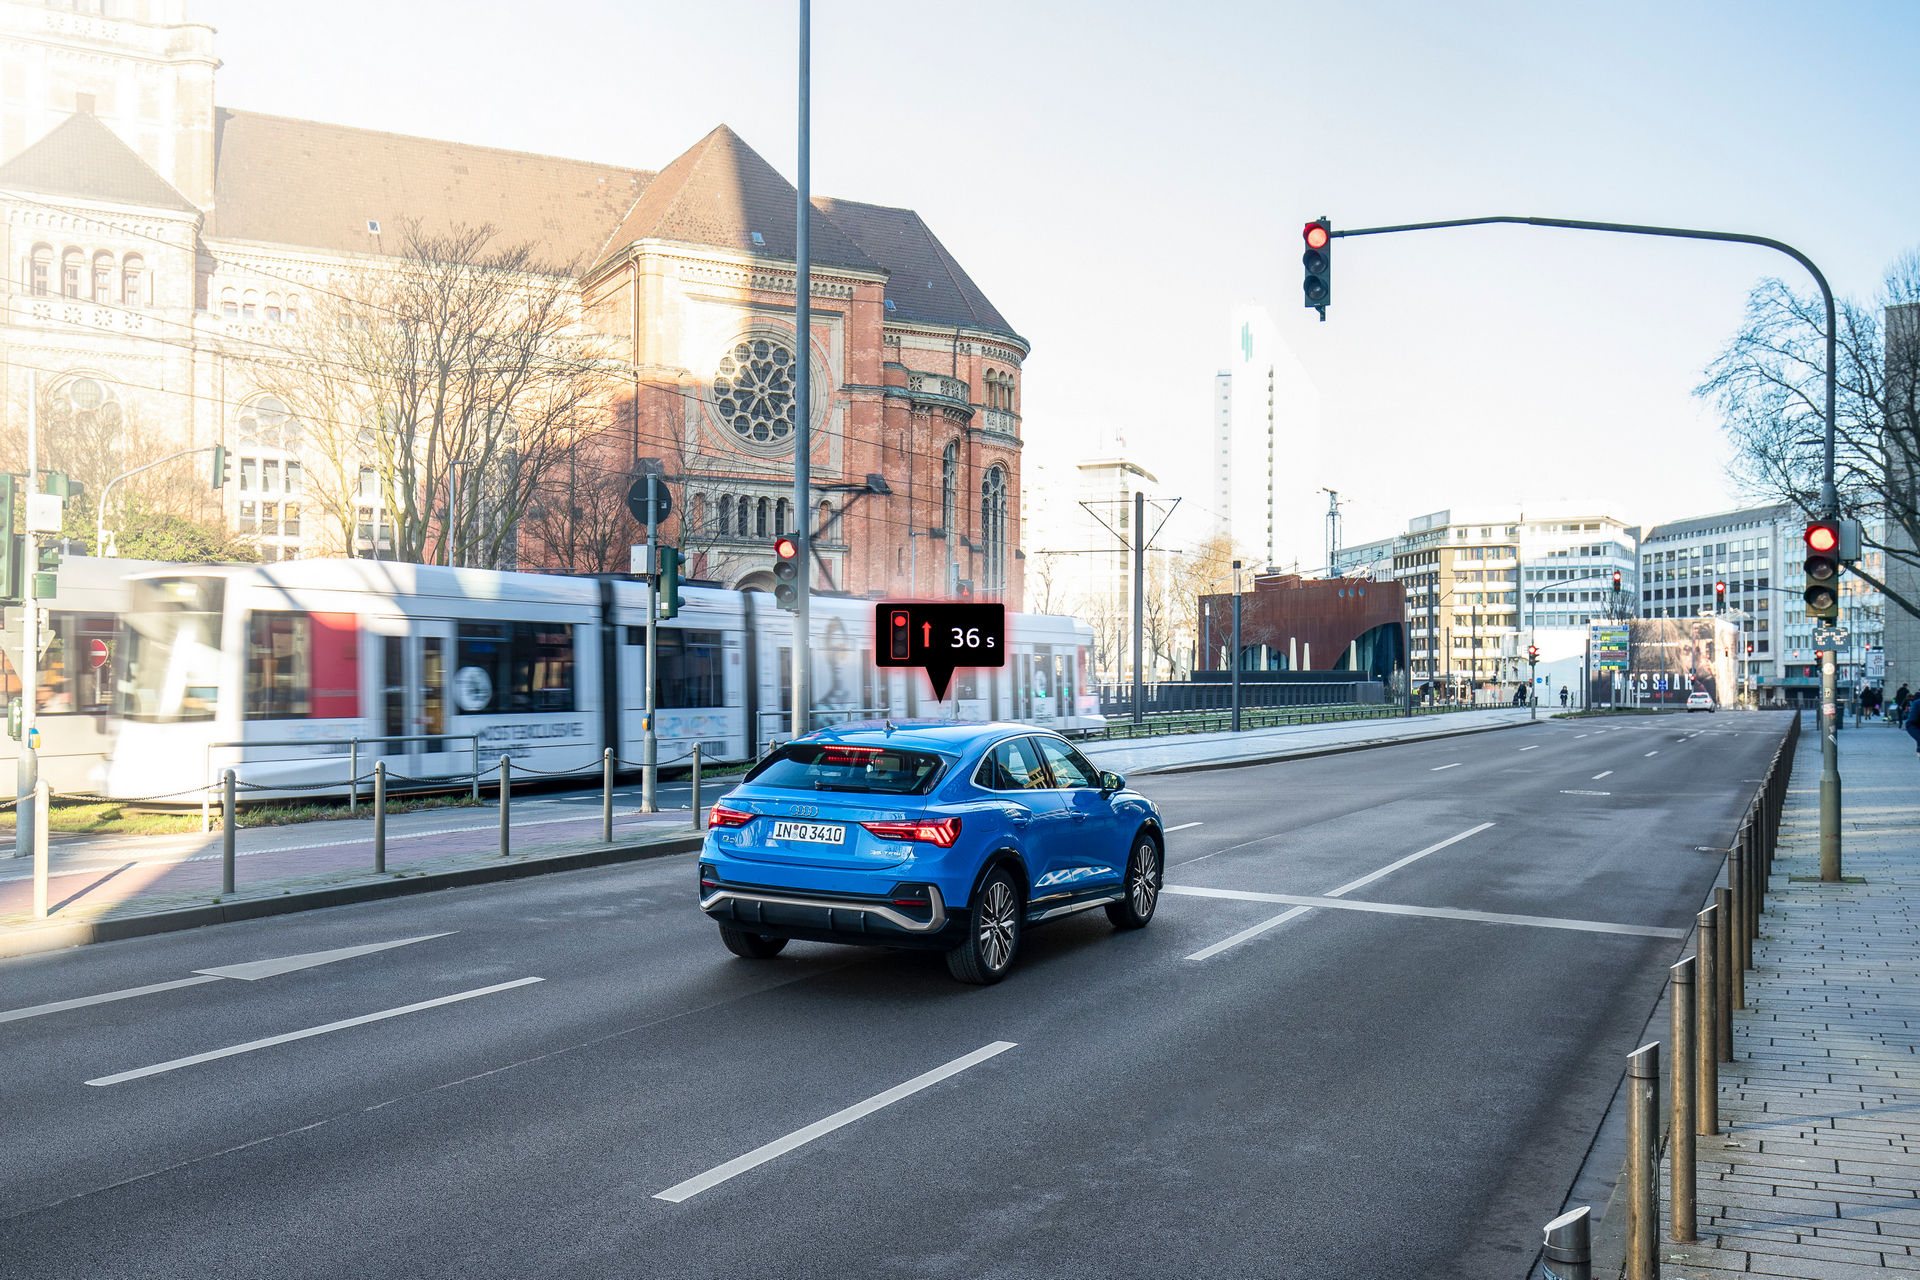 سيارات اودي تبدأ بالتواصل مع إشارات المرور في ألمانيا! 1